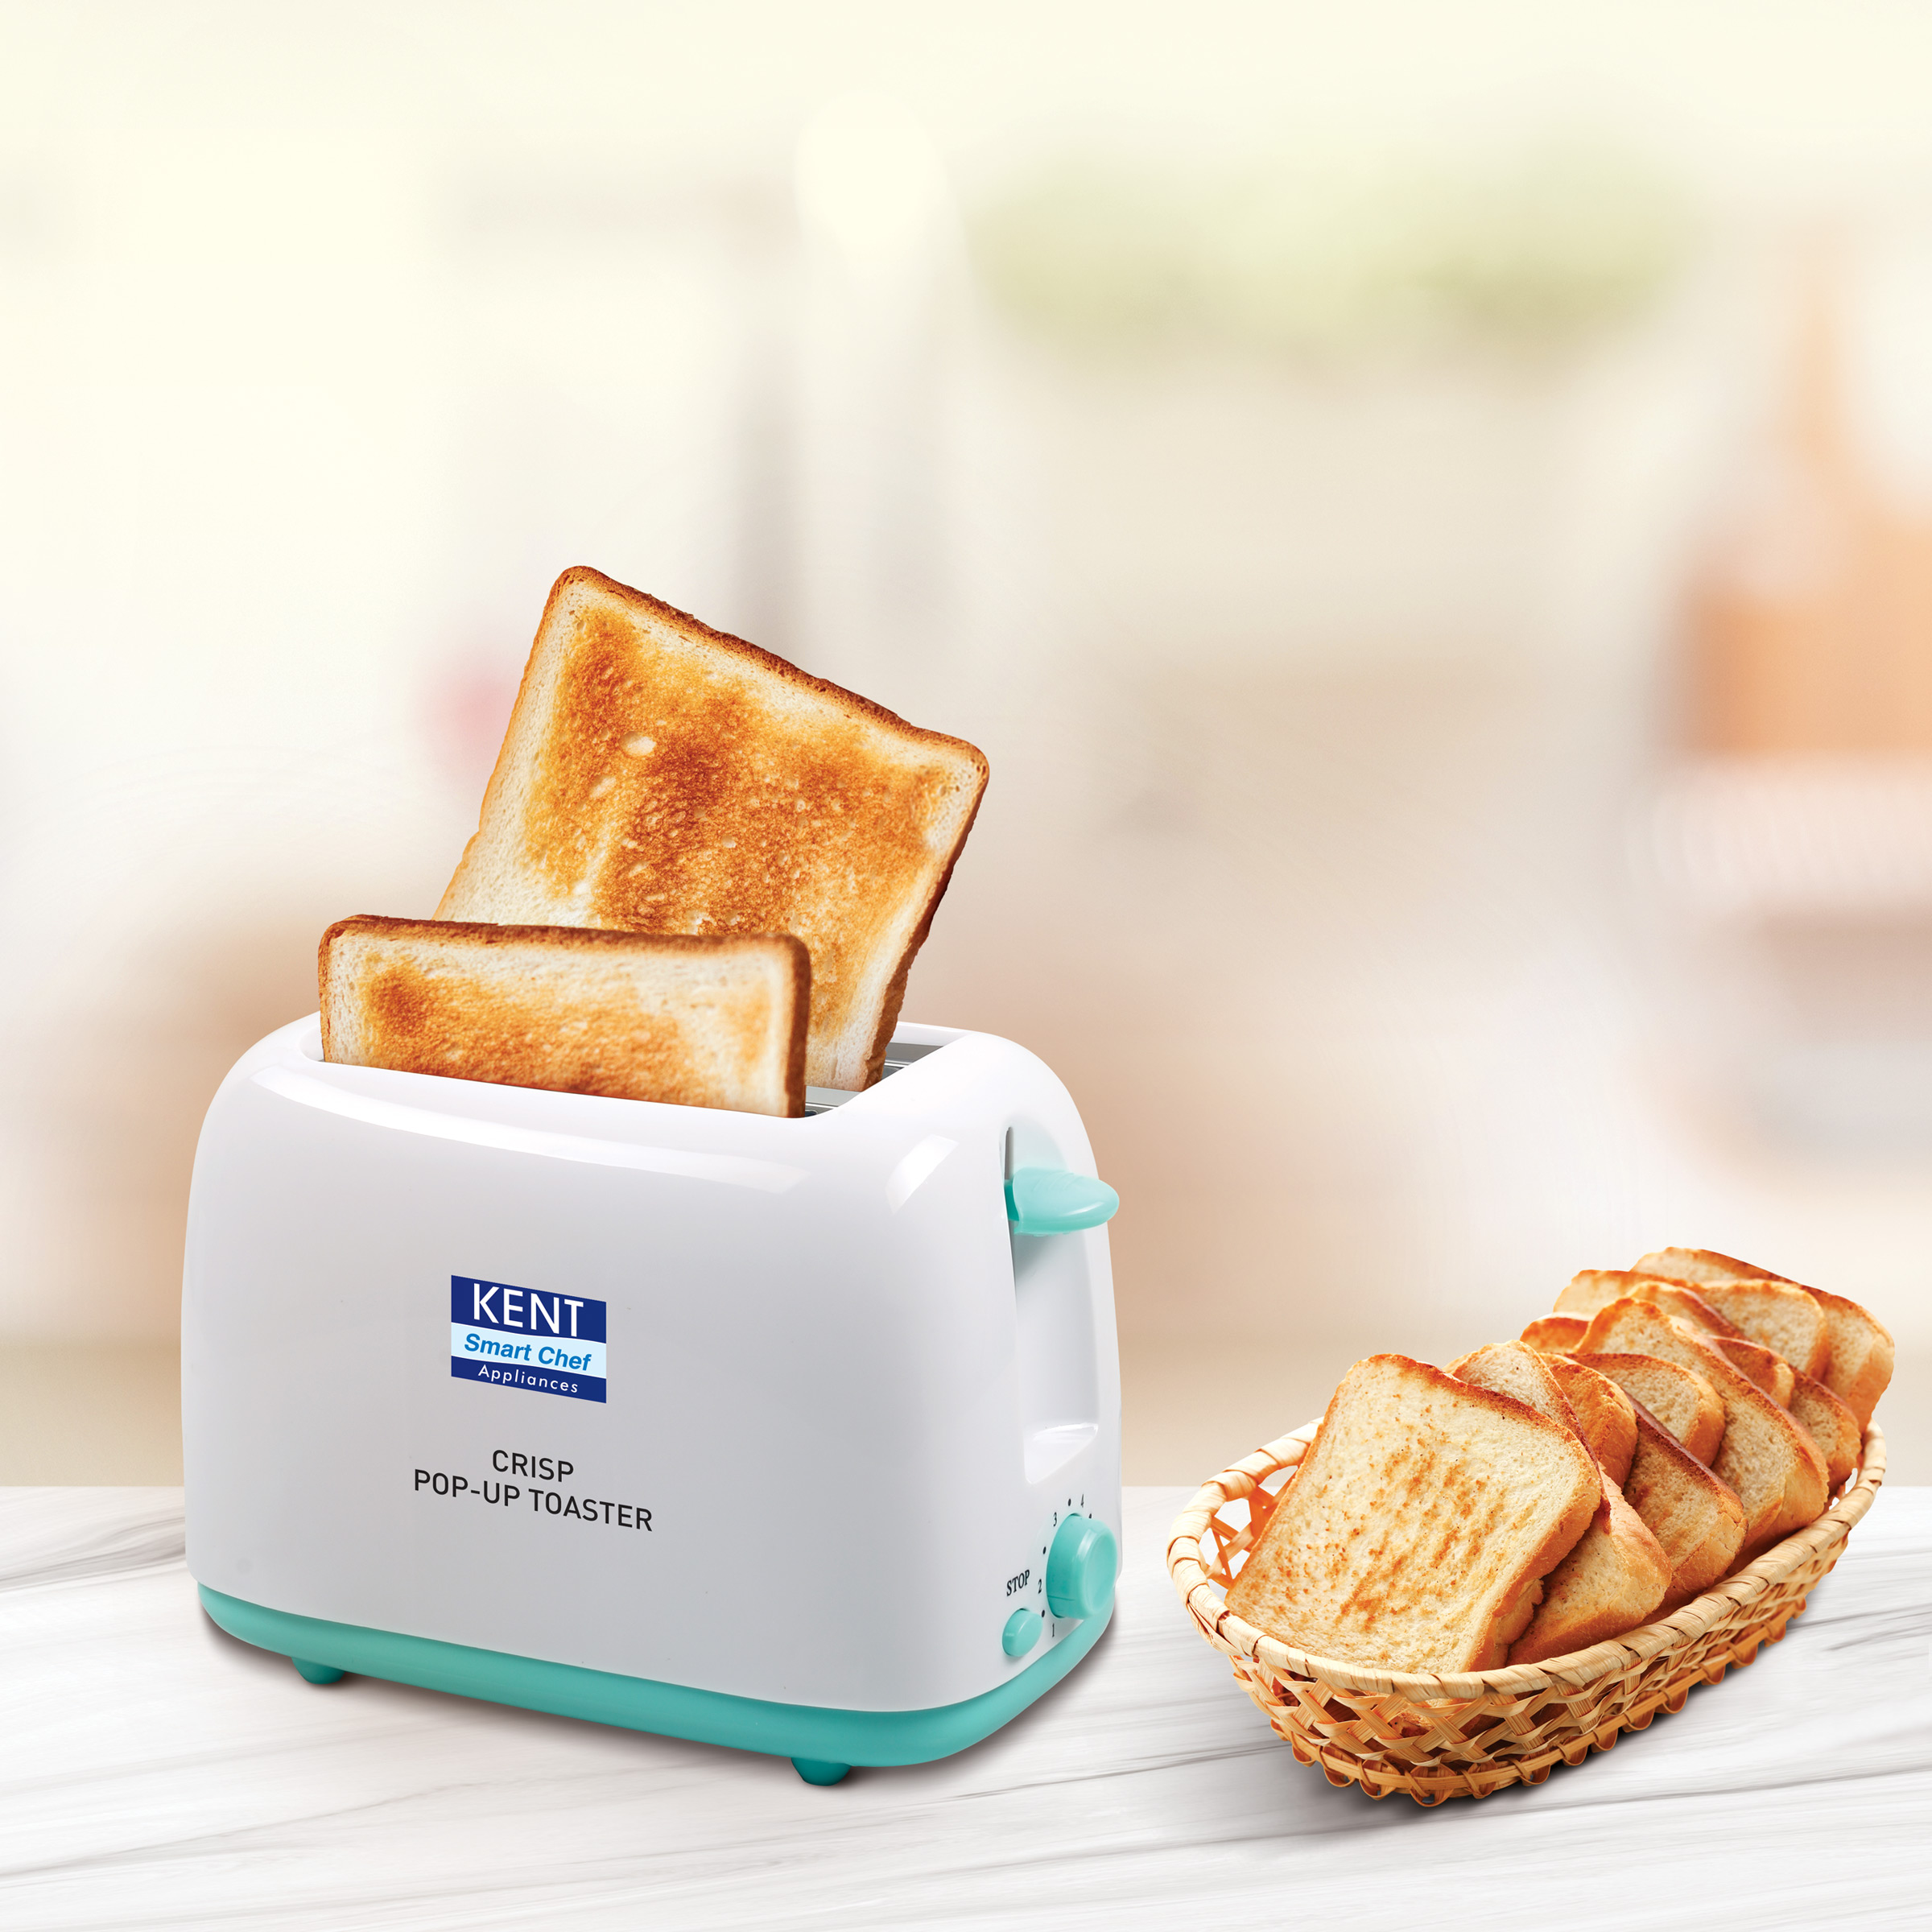 https://www.kent.co.in/images/enlarge/kent-crisp-pop-up-toaster-enlarge-view.png